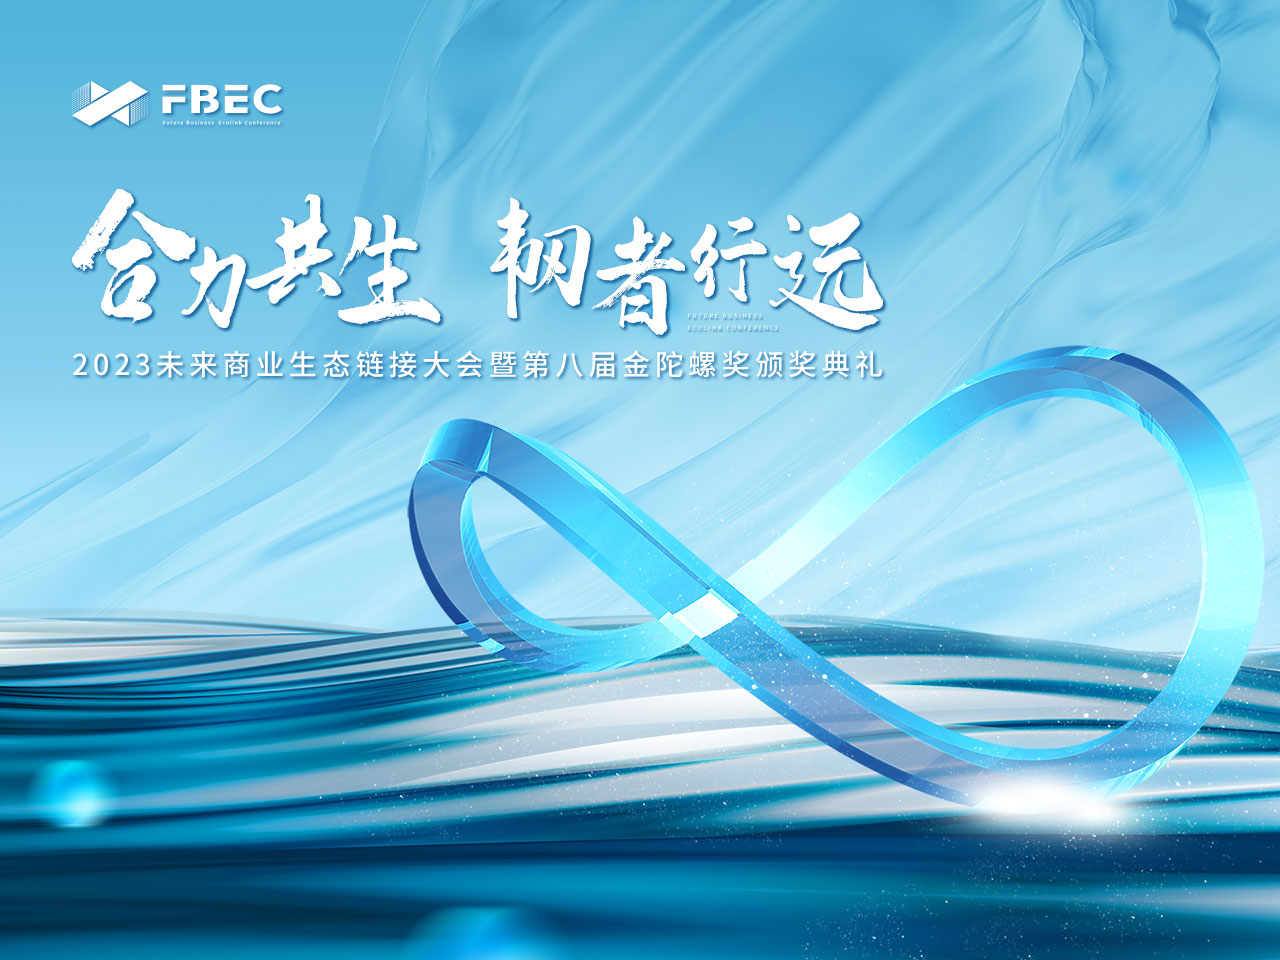 FBEC2023 | 莫界科技 创始合伙人 李竹确认出席并发表主题演讲